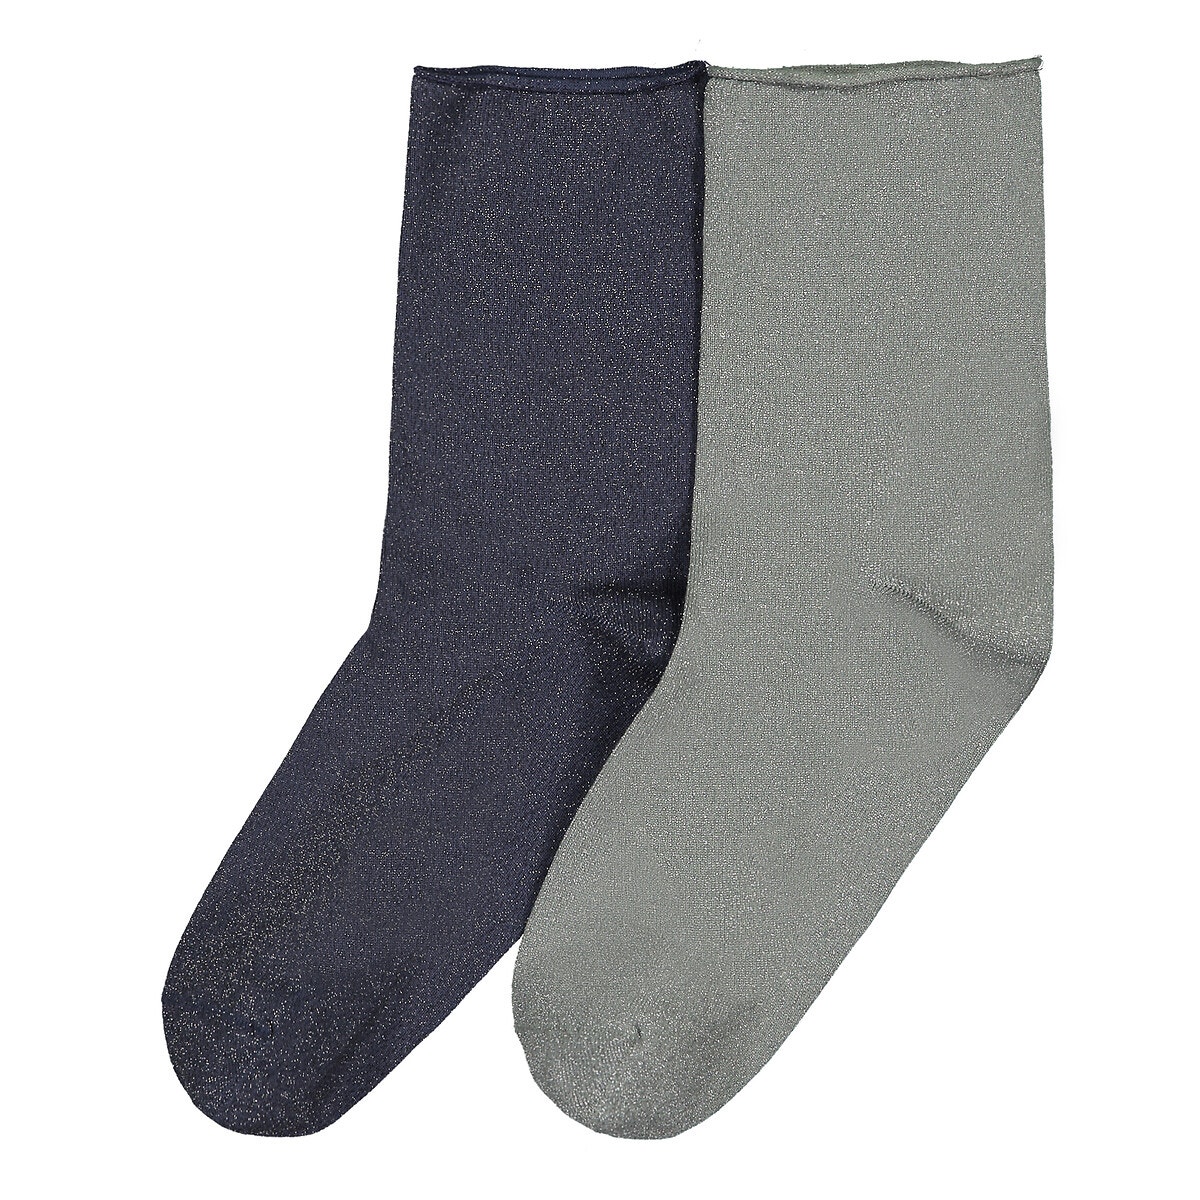 Σετ 2 ζευγάρια κάλτσες με μεταλλιζέ ύφανση